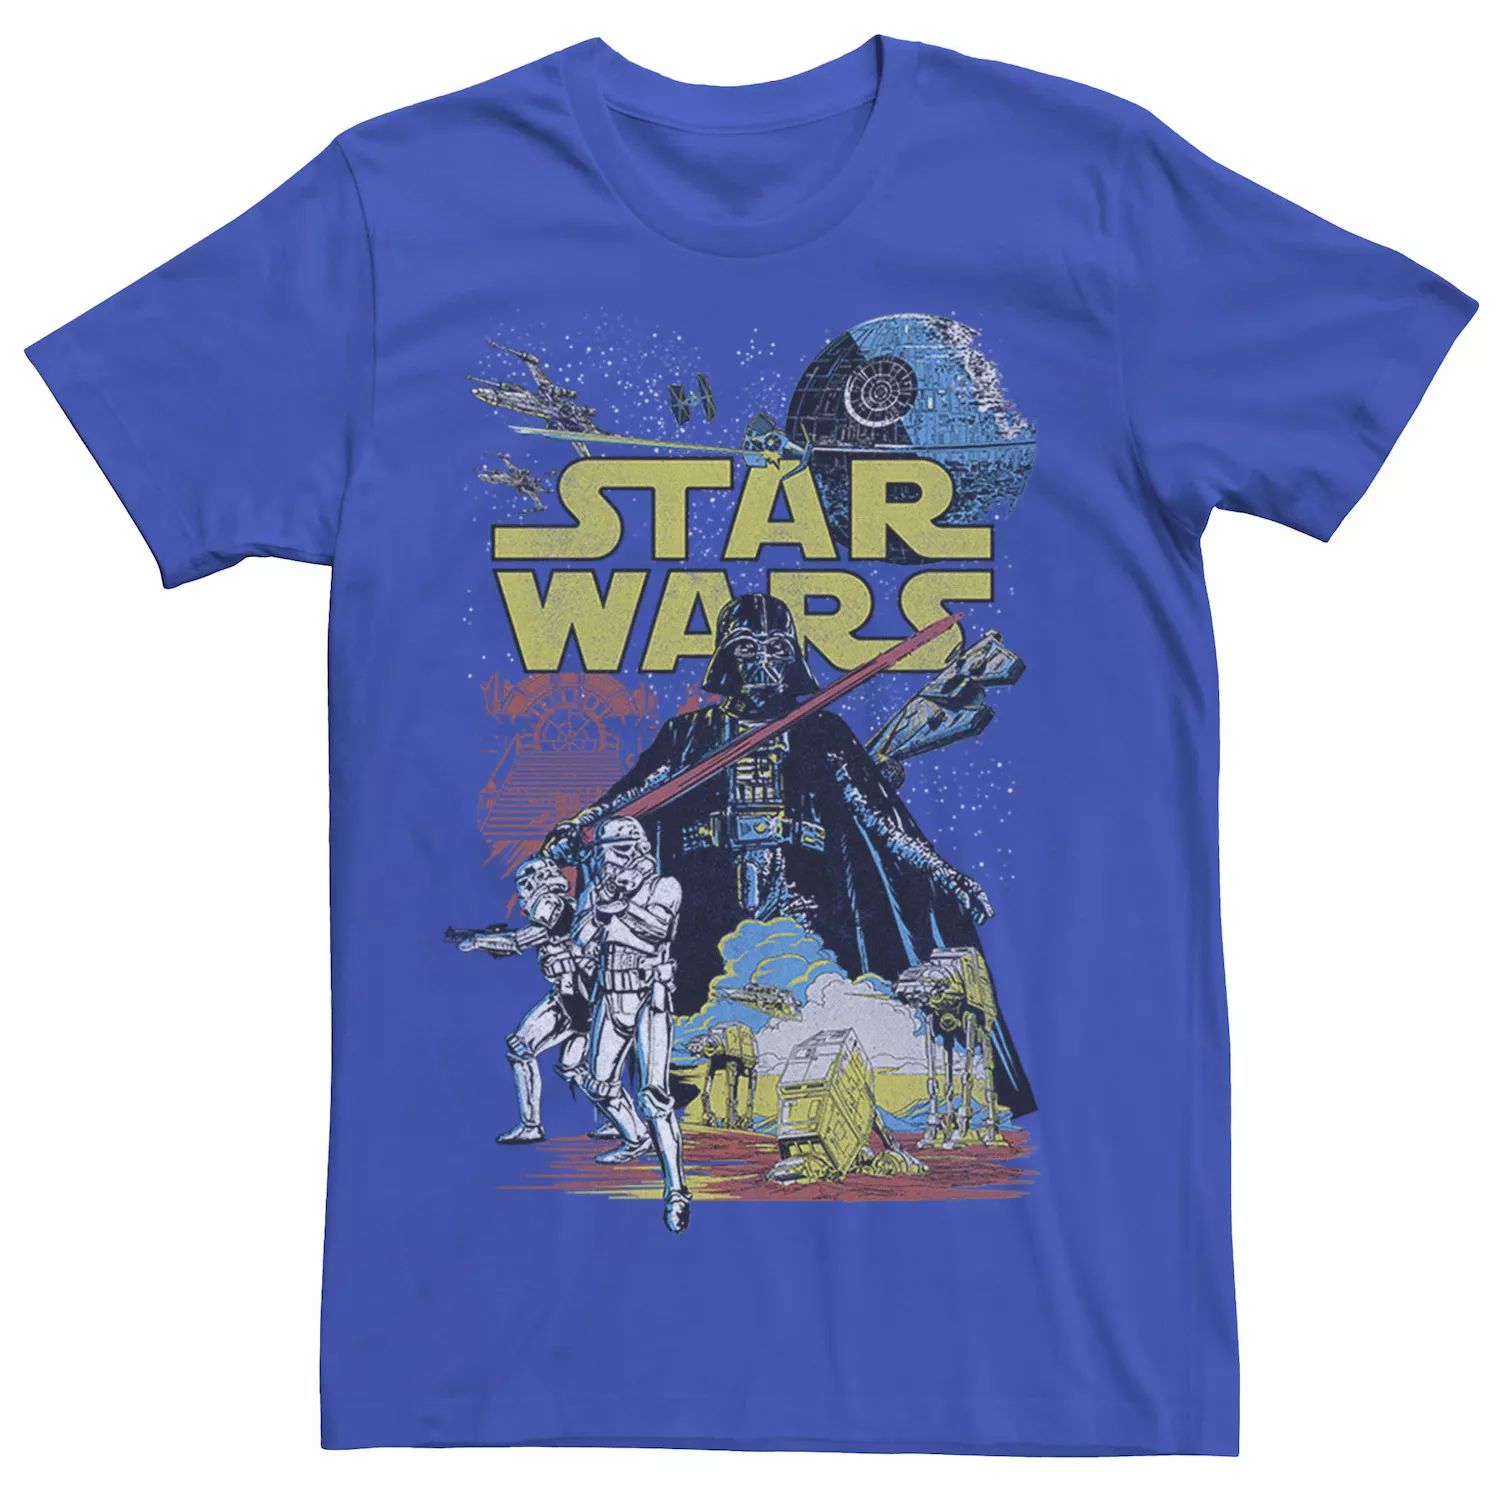 Мужская классическая футболка с плакатом и рисунком Rebel Star Wars мужская классическая футболка с графическим плакатом rebel star wars светло синий